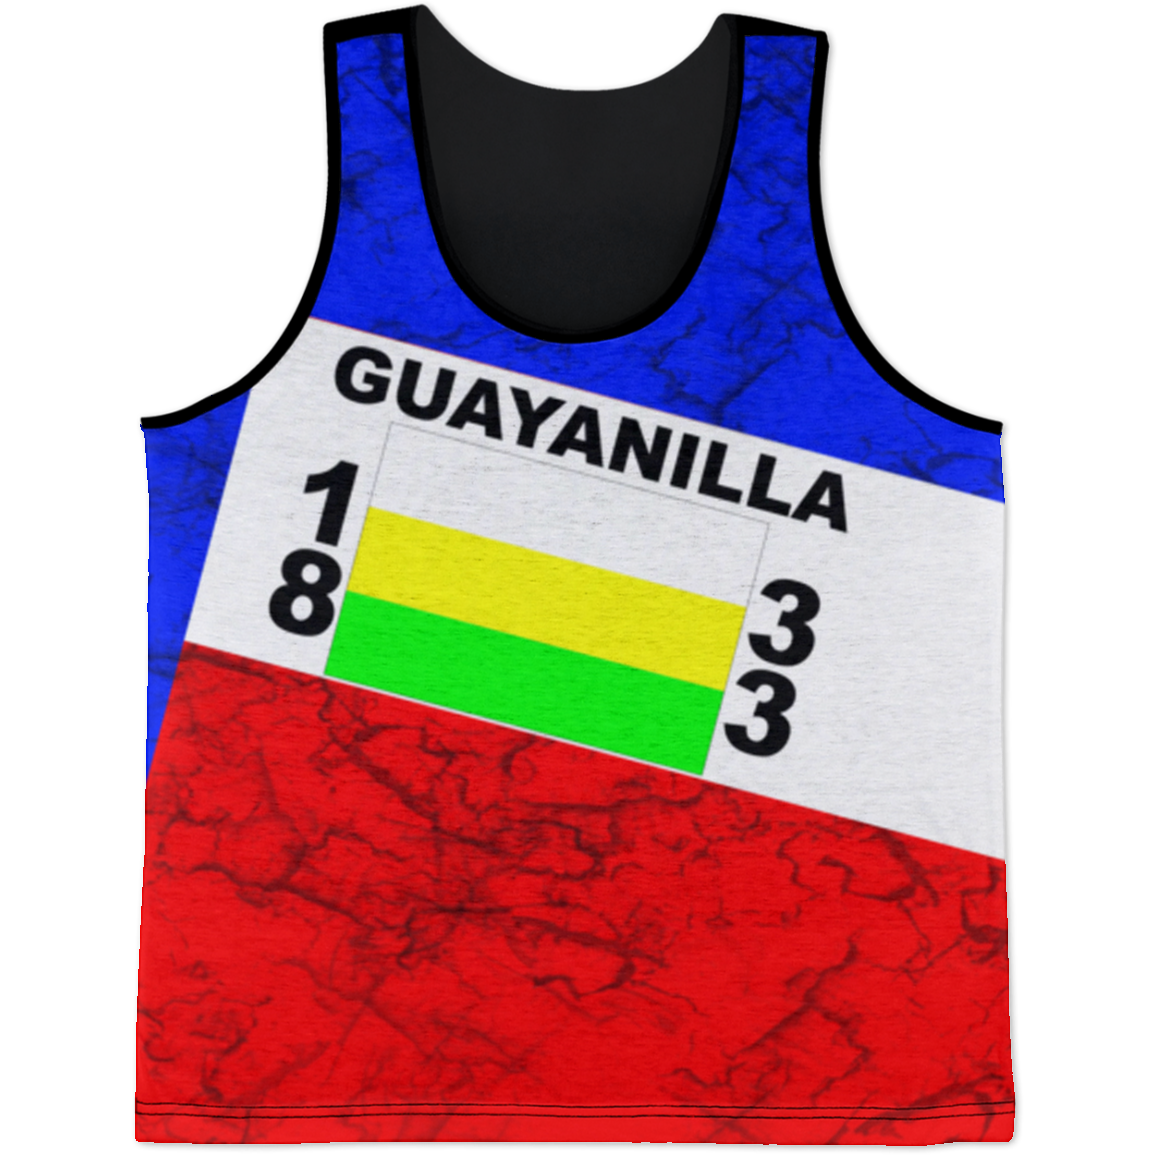 Guayanilla Tank Top - Puerto Rican Pride